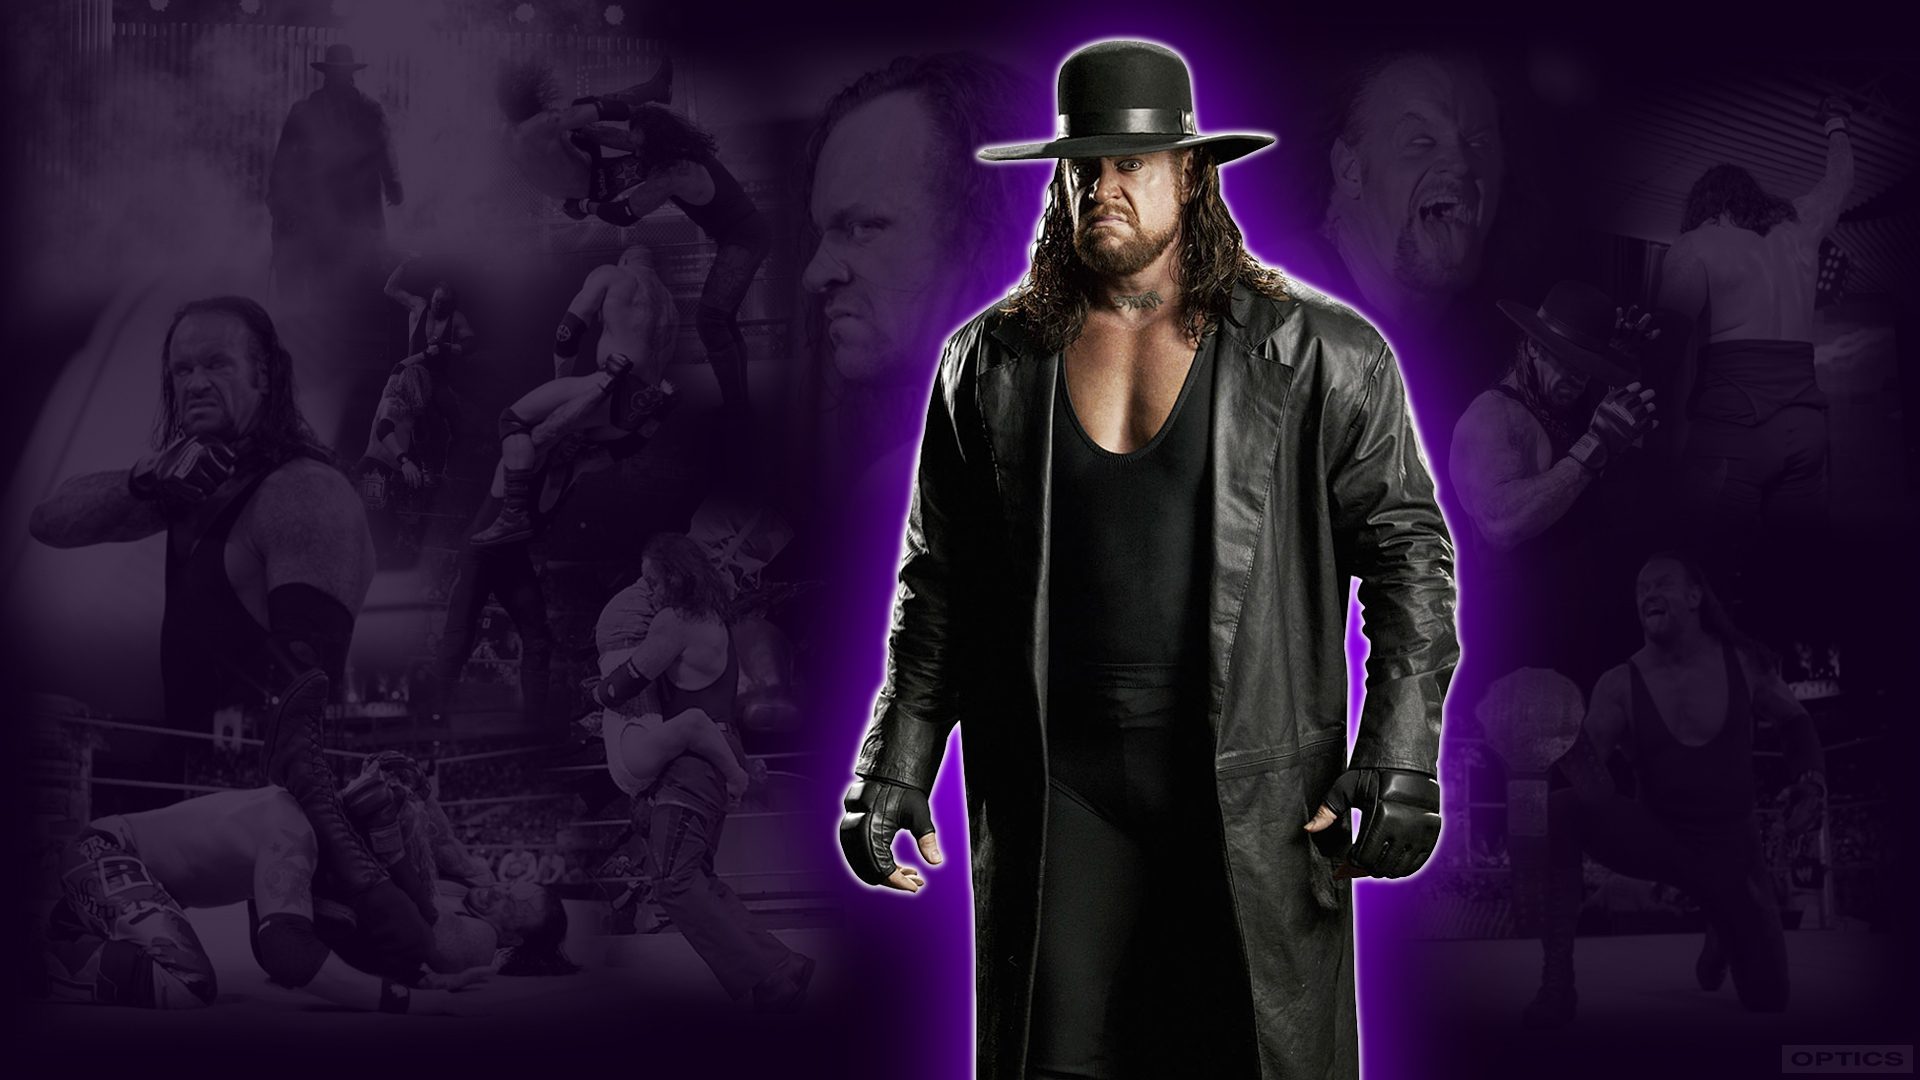  netfs41f200904751The Undertaker   WWE Wallpaper by 0PT1C5jpg